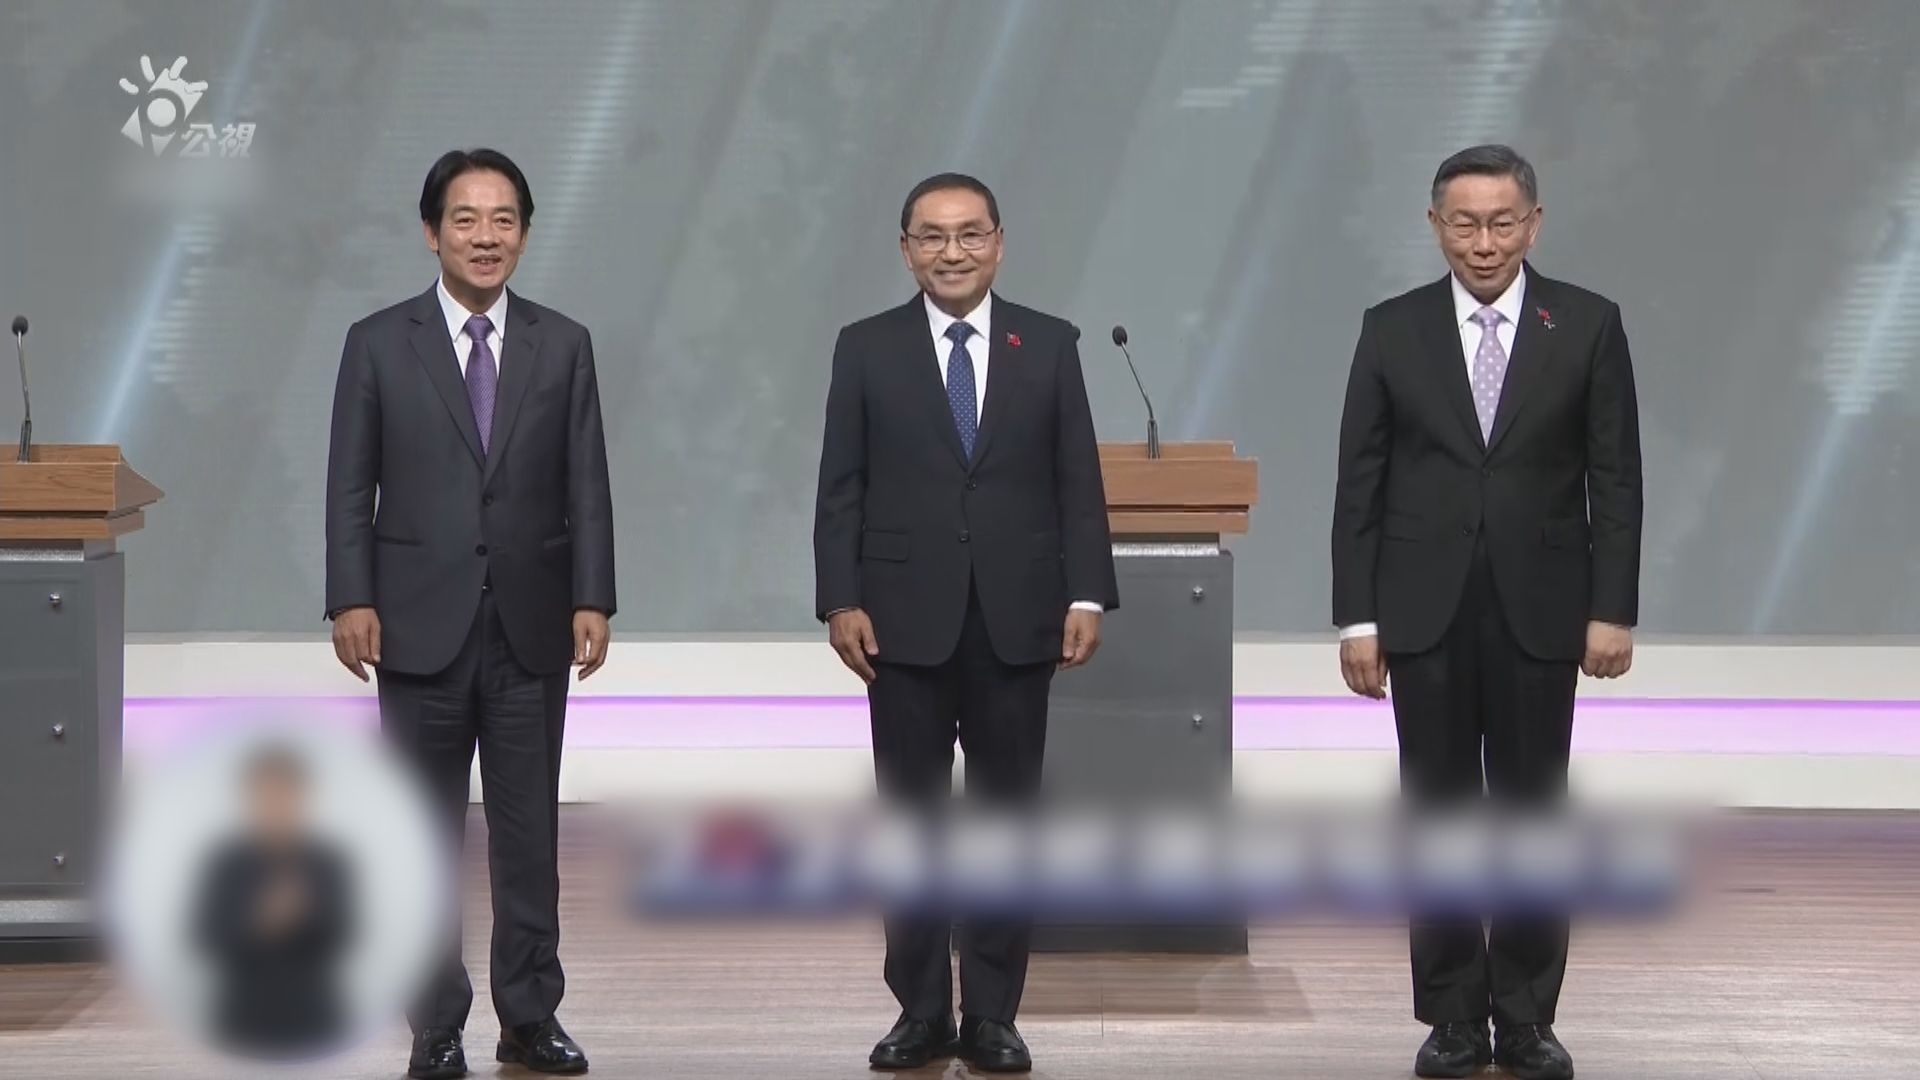 台灣大選電視辯論 三位候選人在兩岸等議題針鋒相對